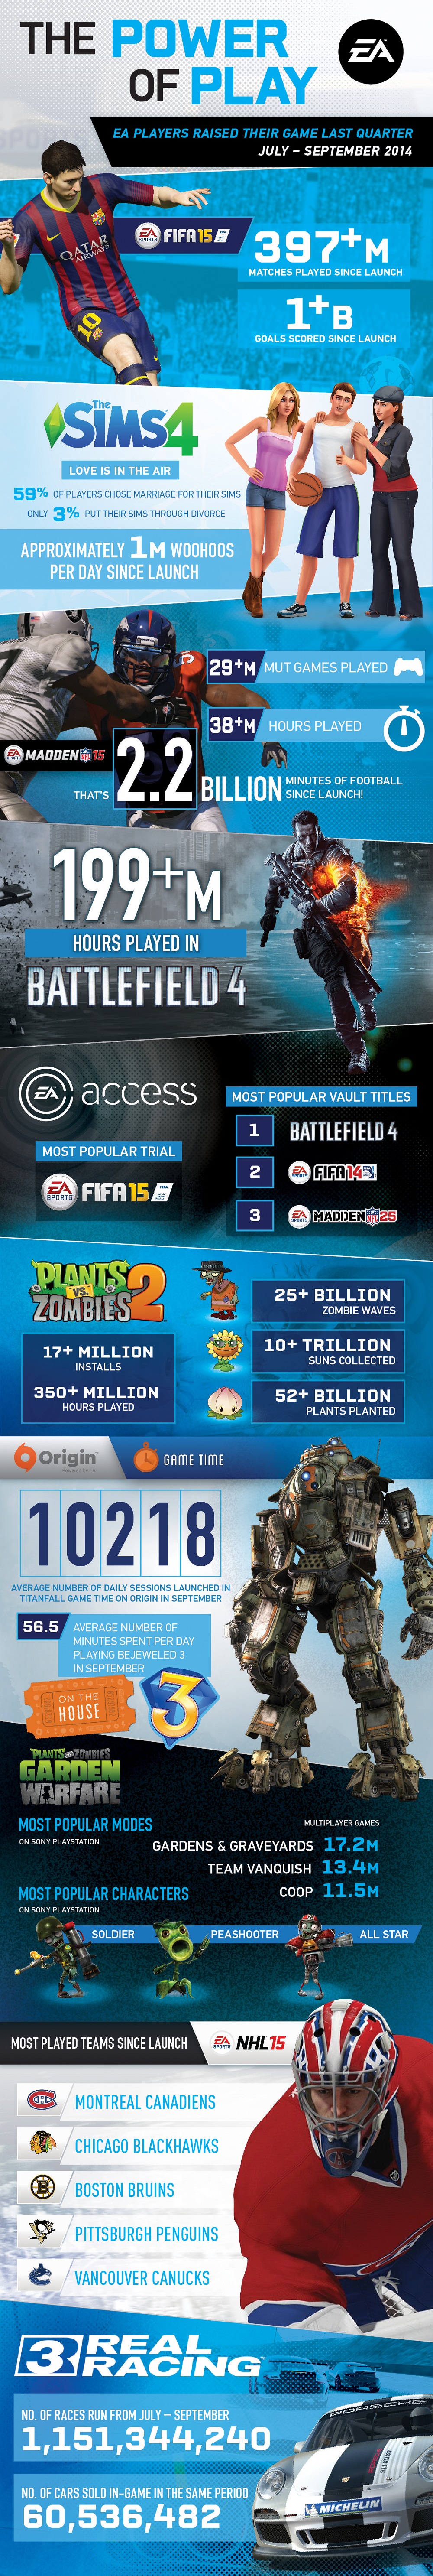 EA Q2 earnings